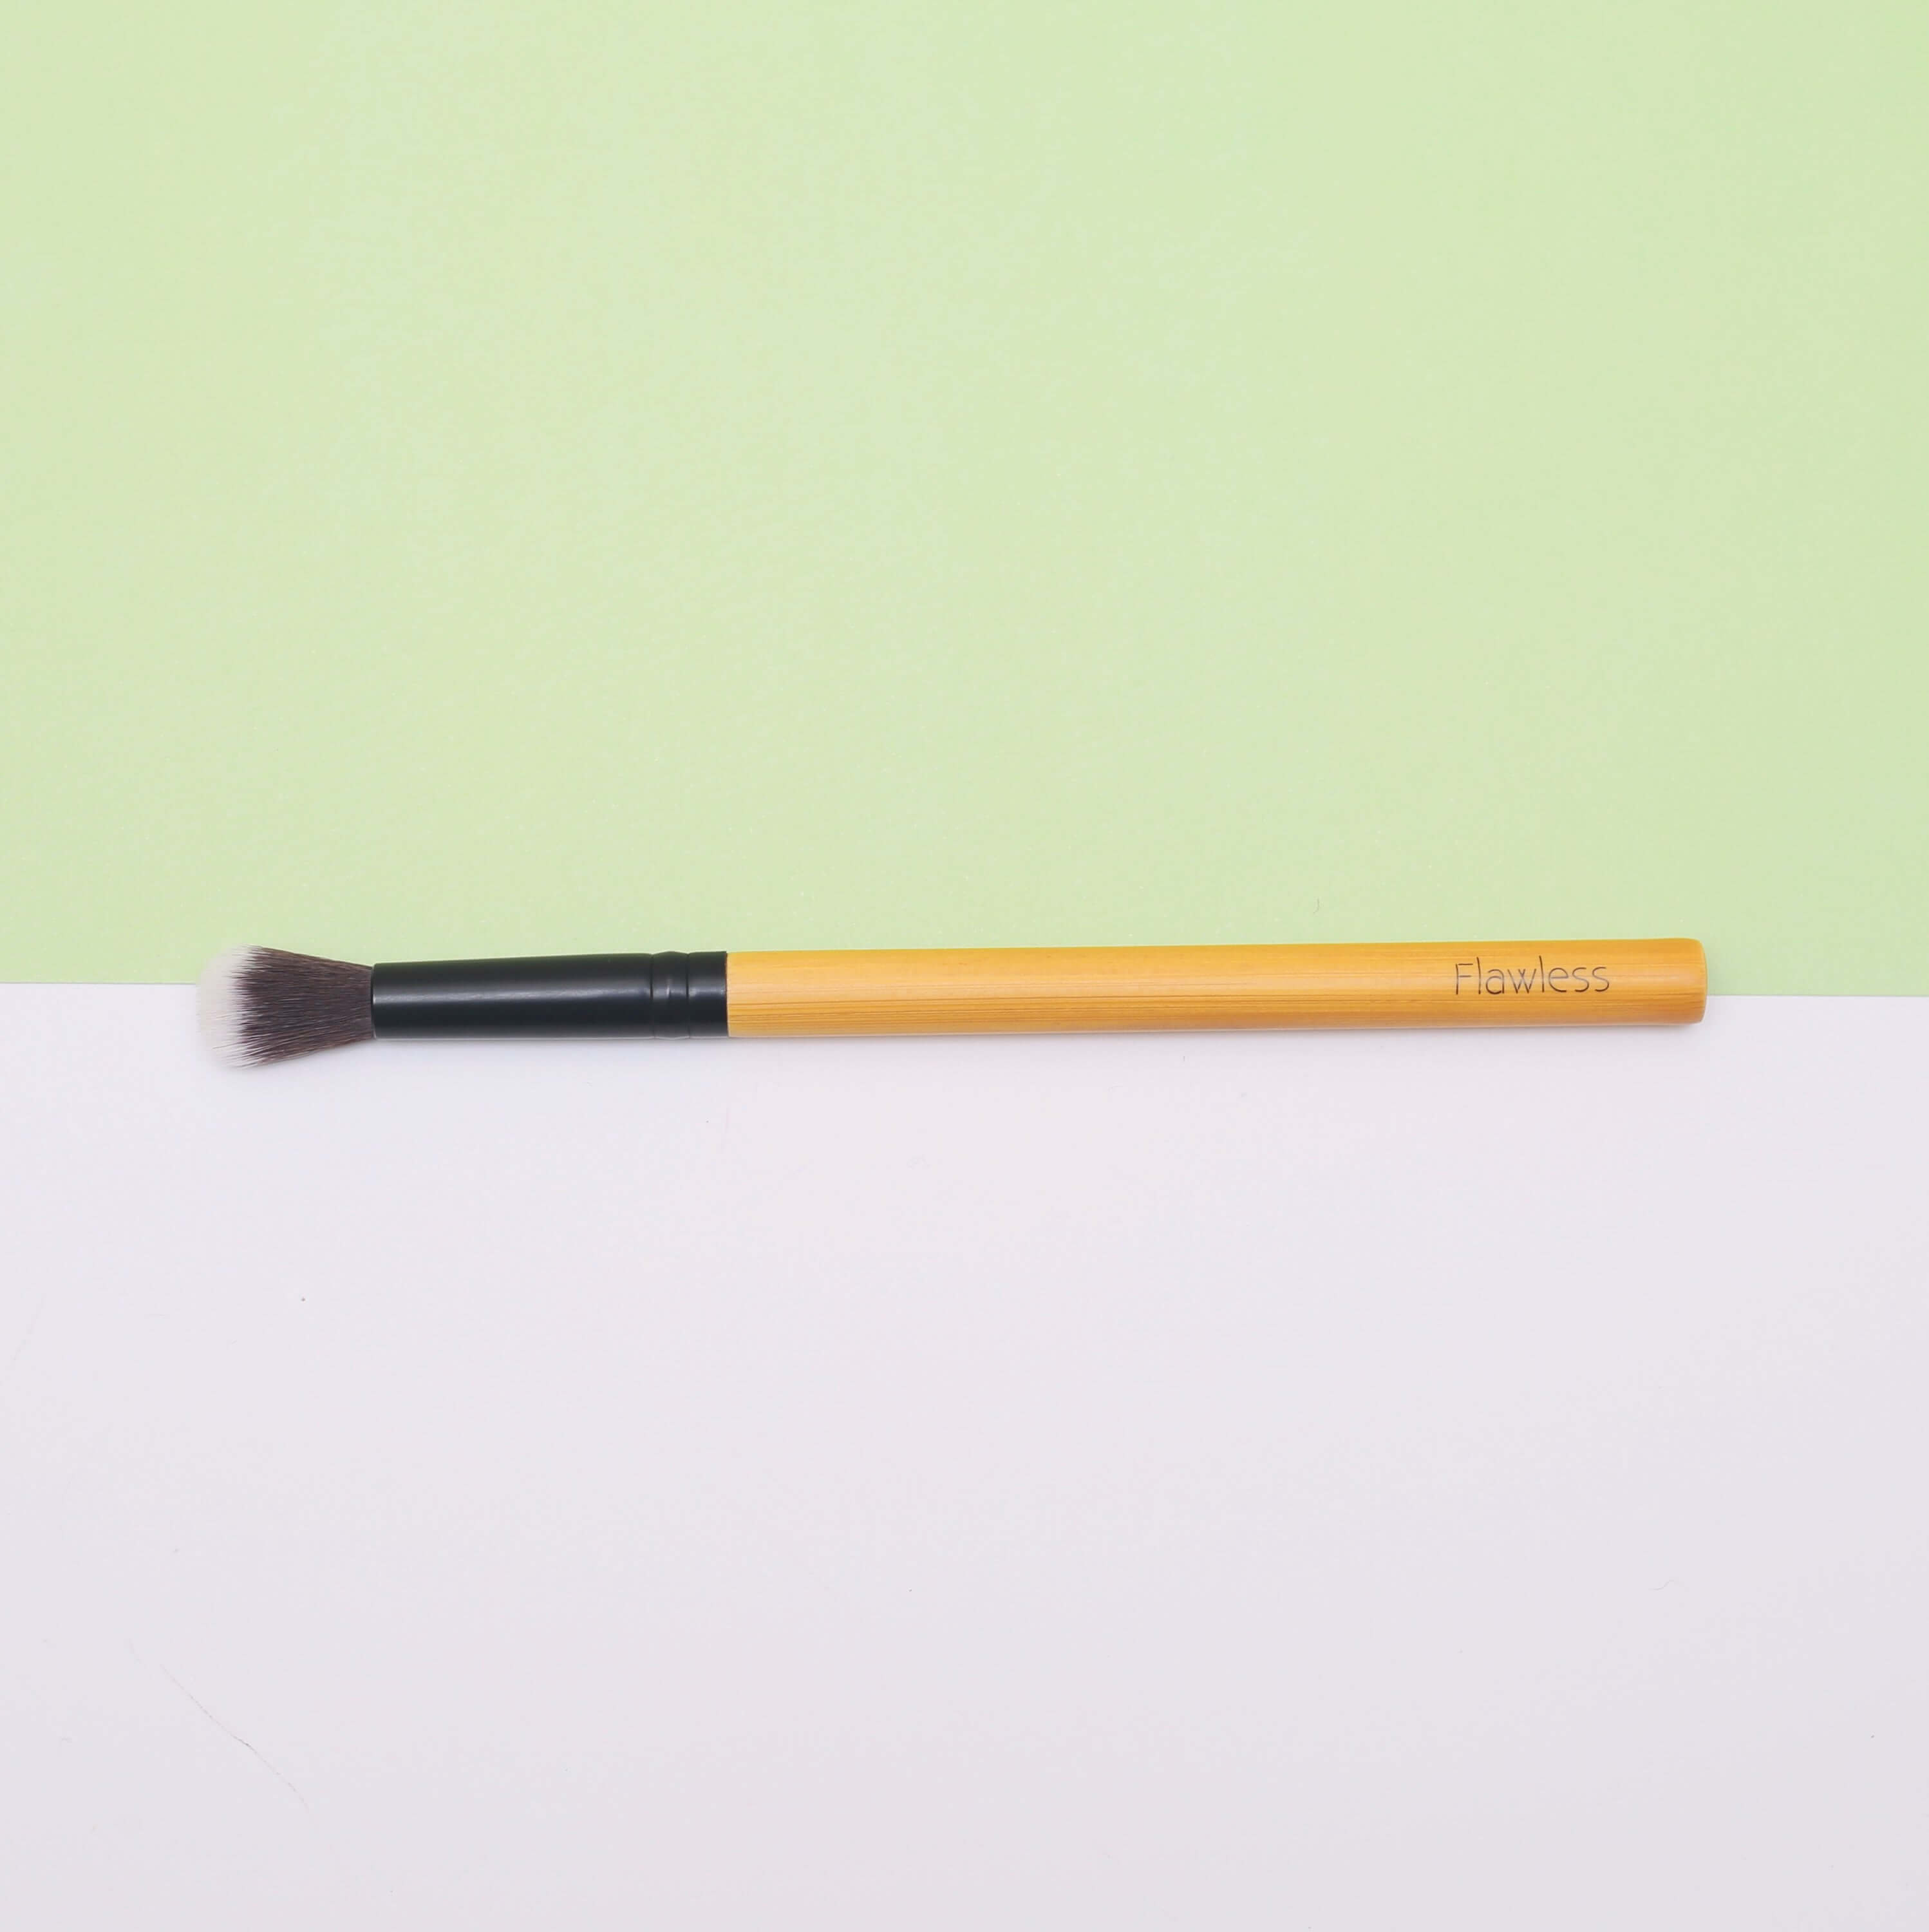 THE Bamboo Blending Makeup Brush